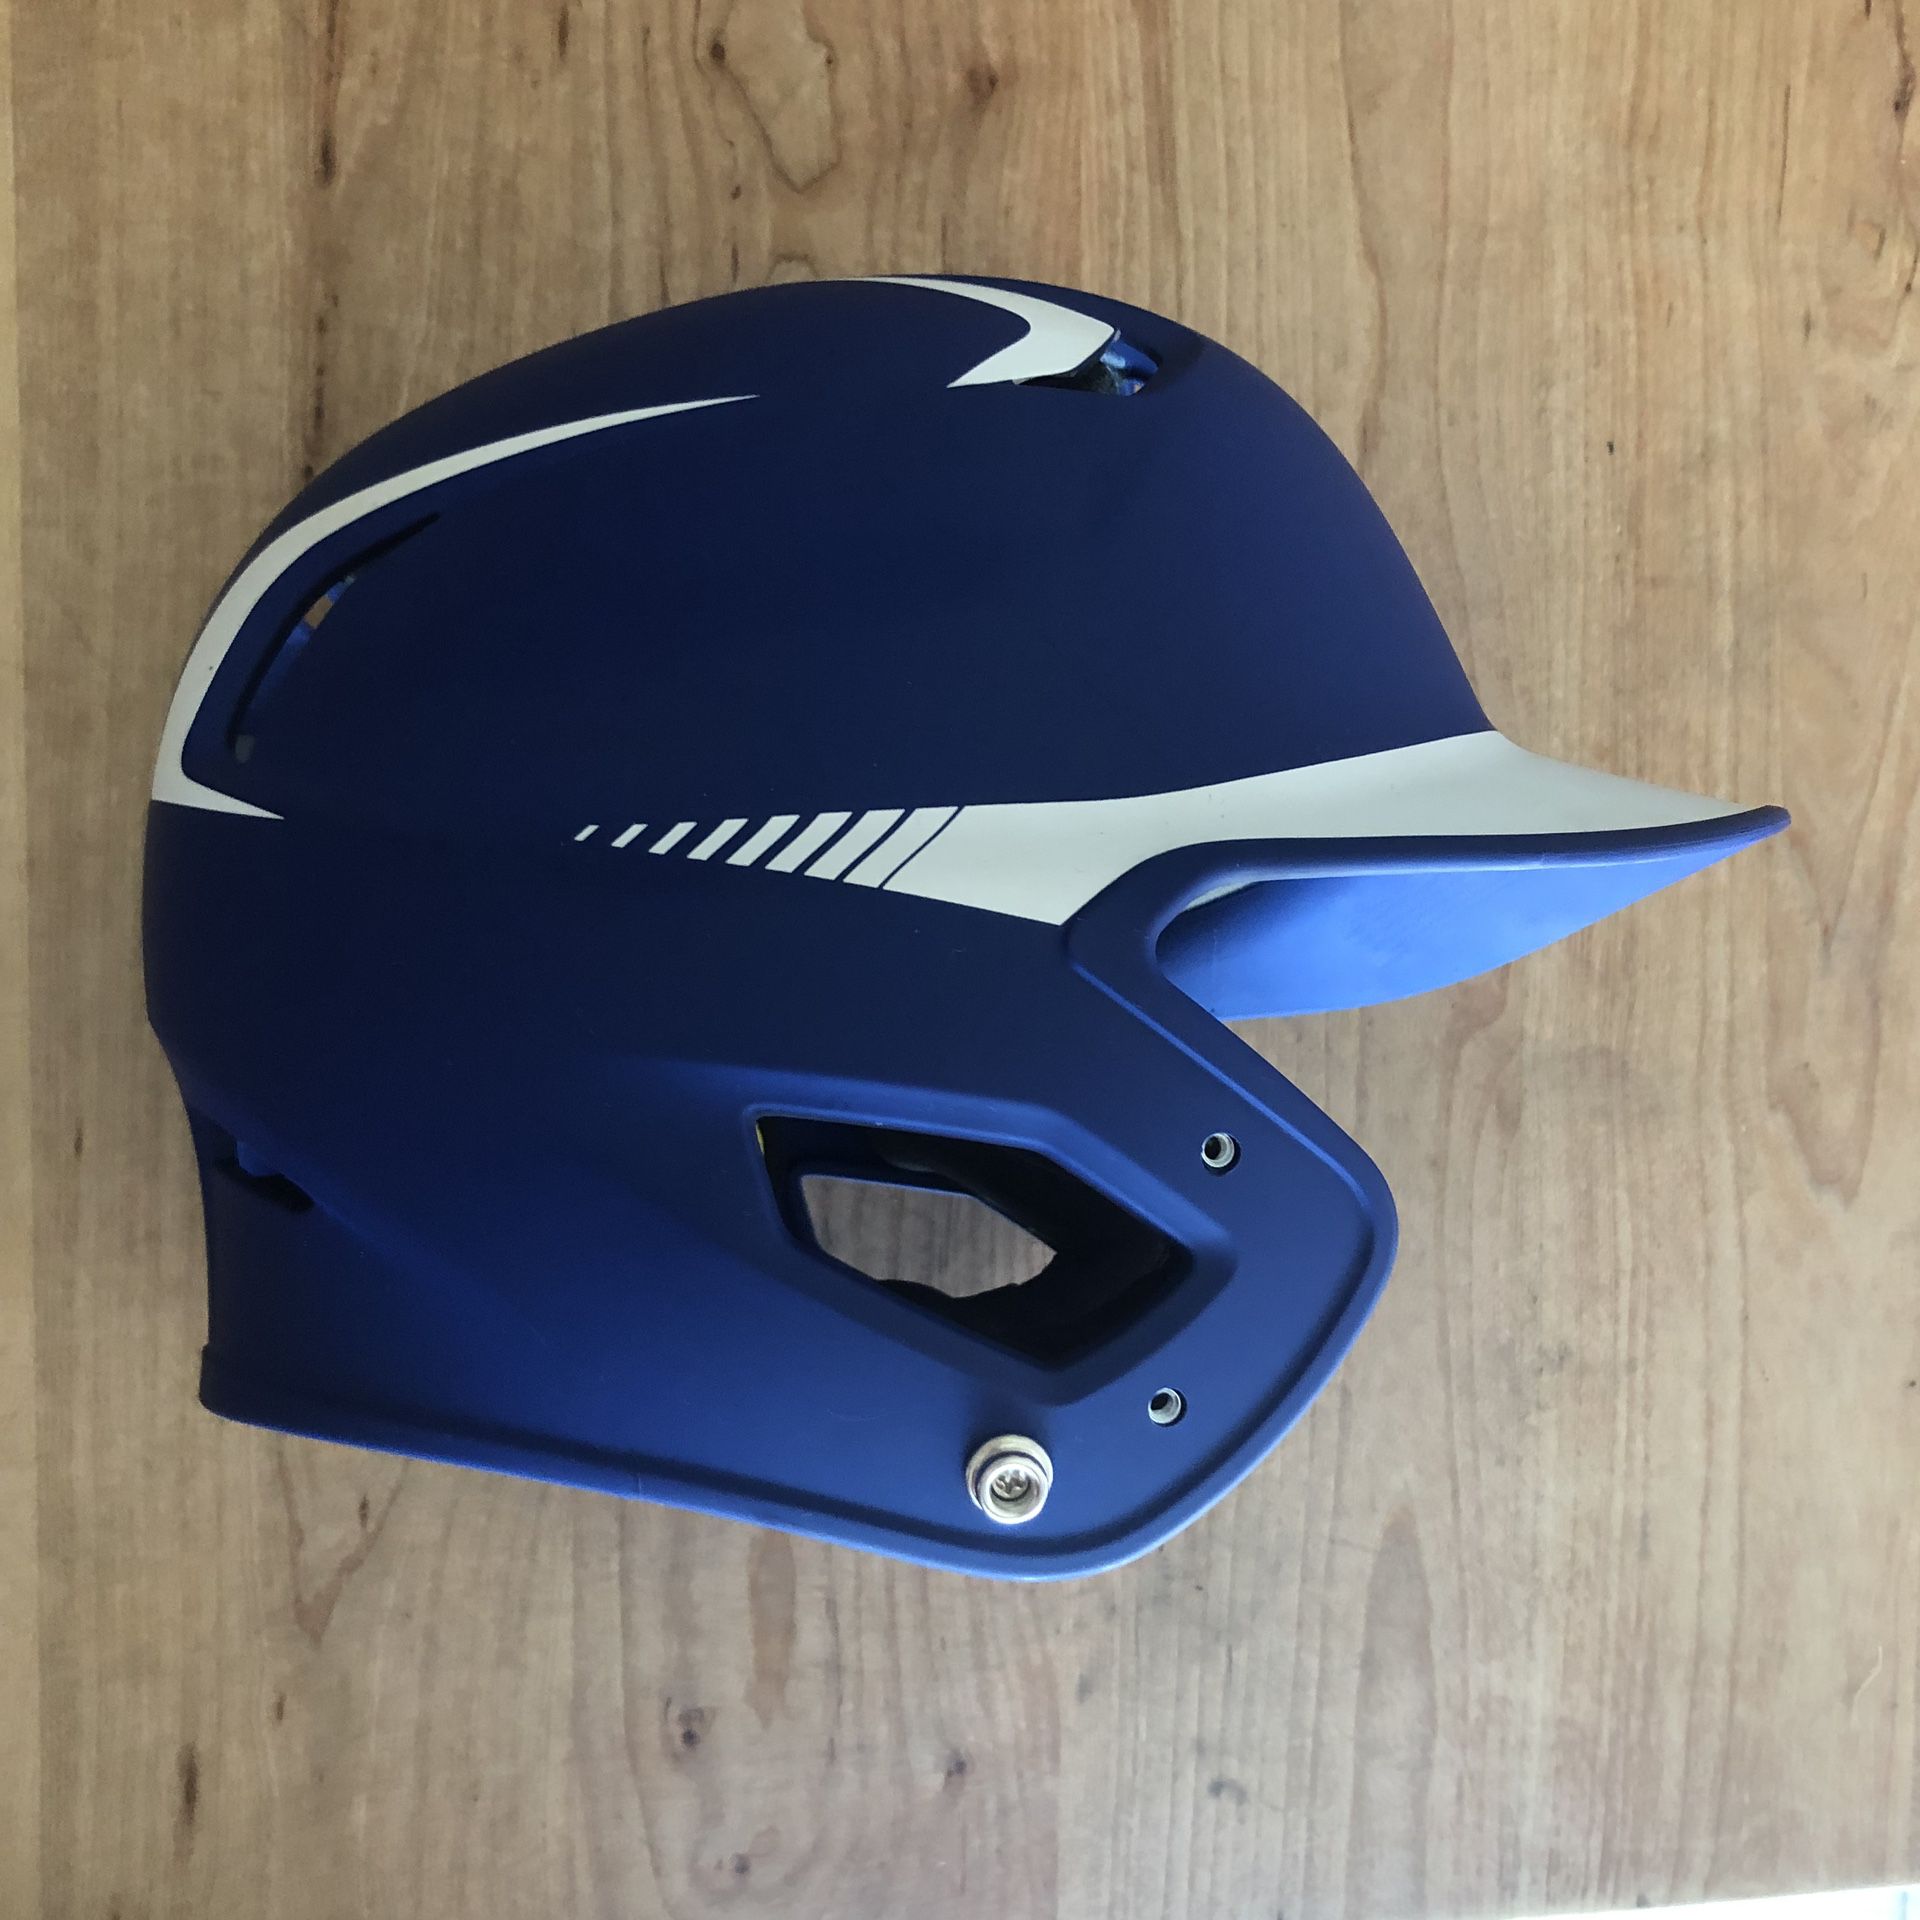 Easton Z5 Softball Baseball Batting Helmet Like New Condition!!